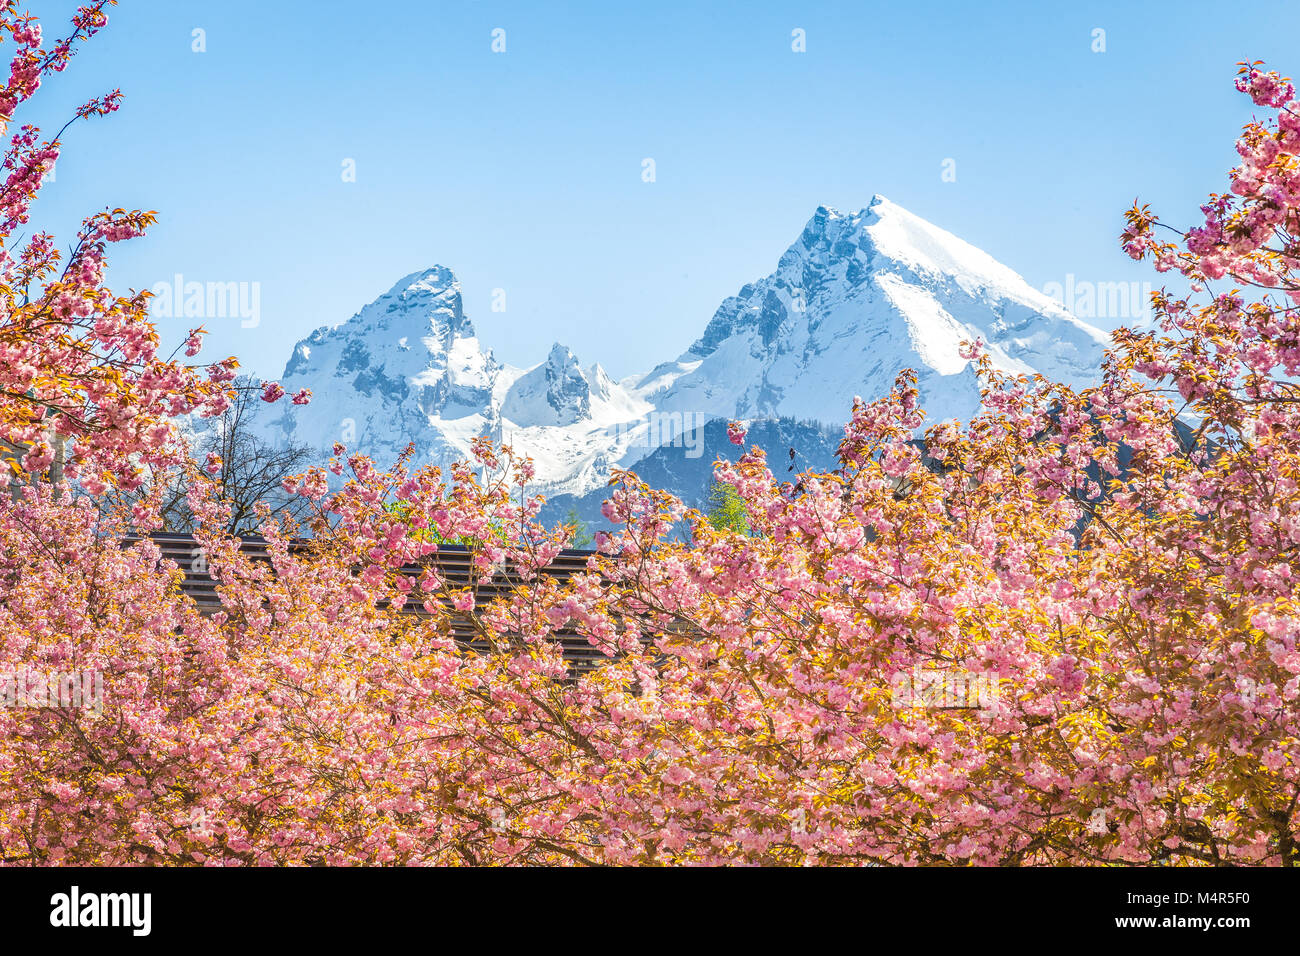 Vista panorámica de la famosa montaña de Watzmann pico con los cerezos en flor en un día soleado con el cielo azul en primavera, Berchtesgadener Land de Baviera, Alemania Foto de stock